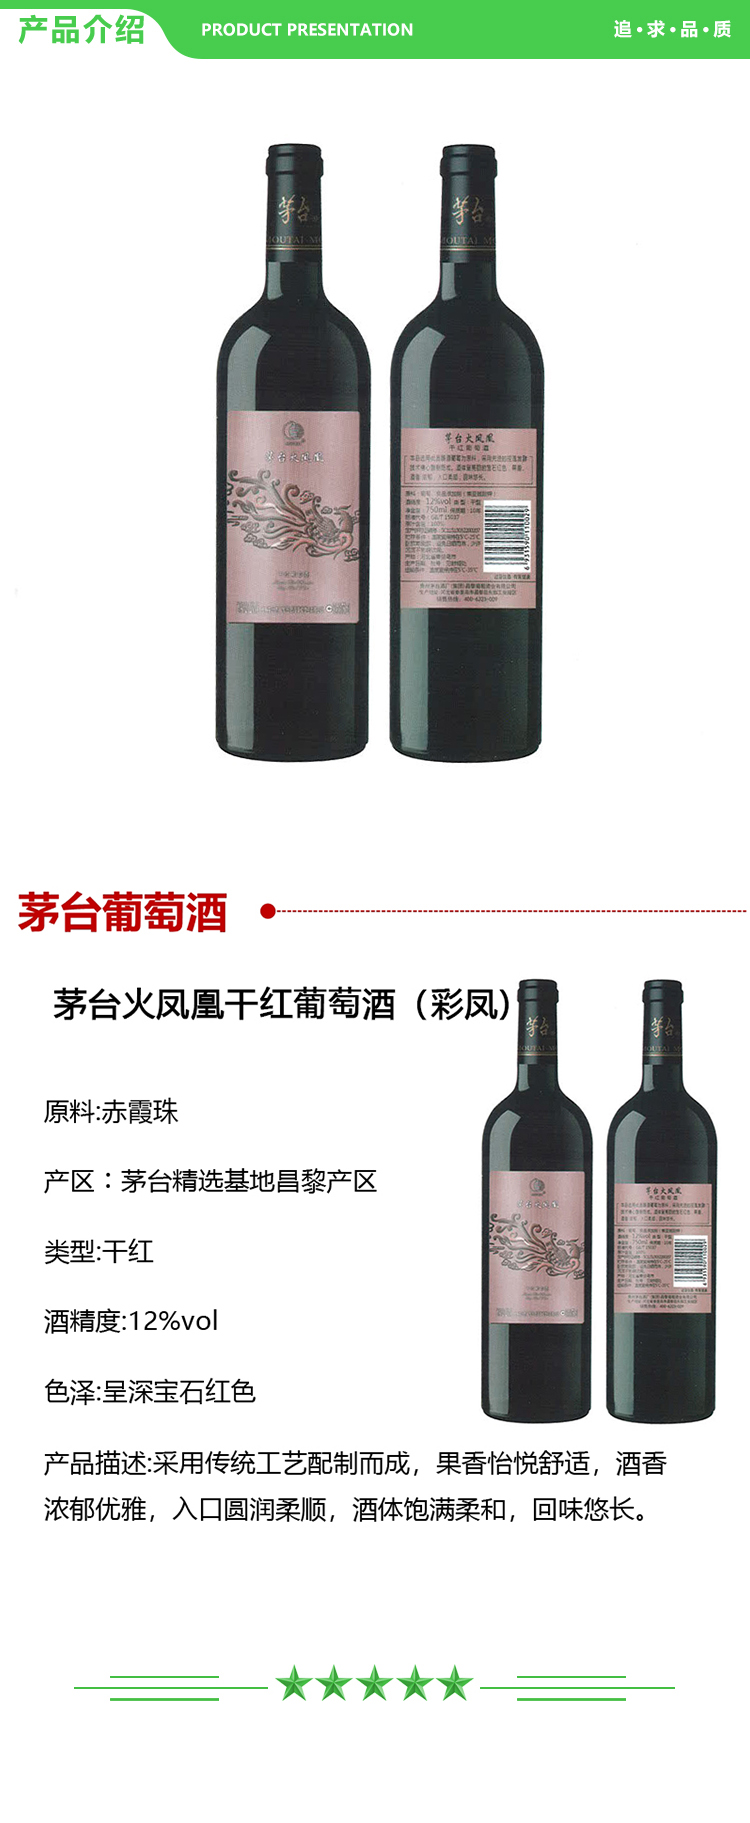 茅台 火凤凰干红葡萄酒(彩凤) 12%vol 750ml 2.jpg